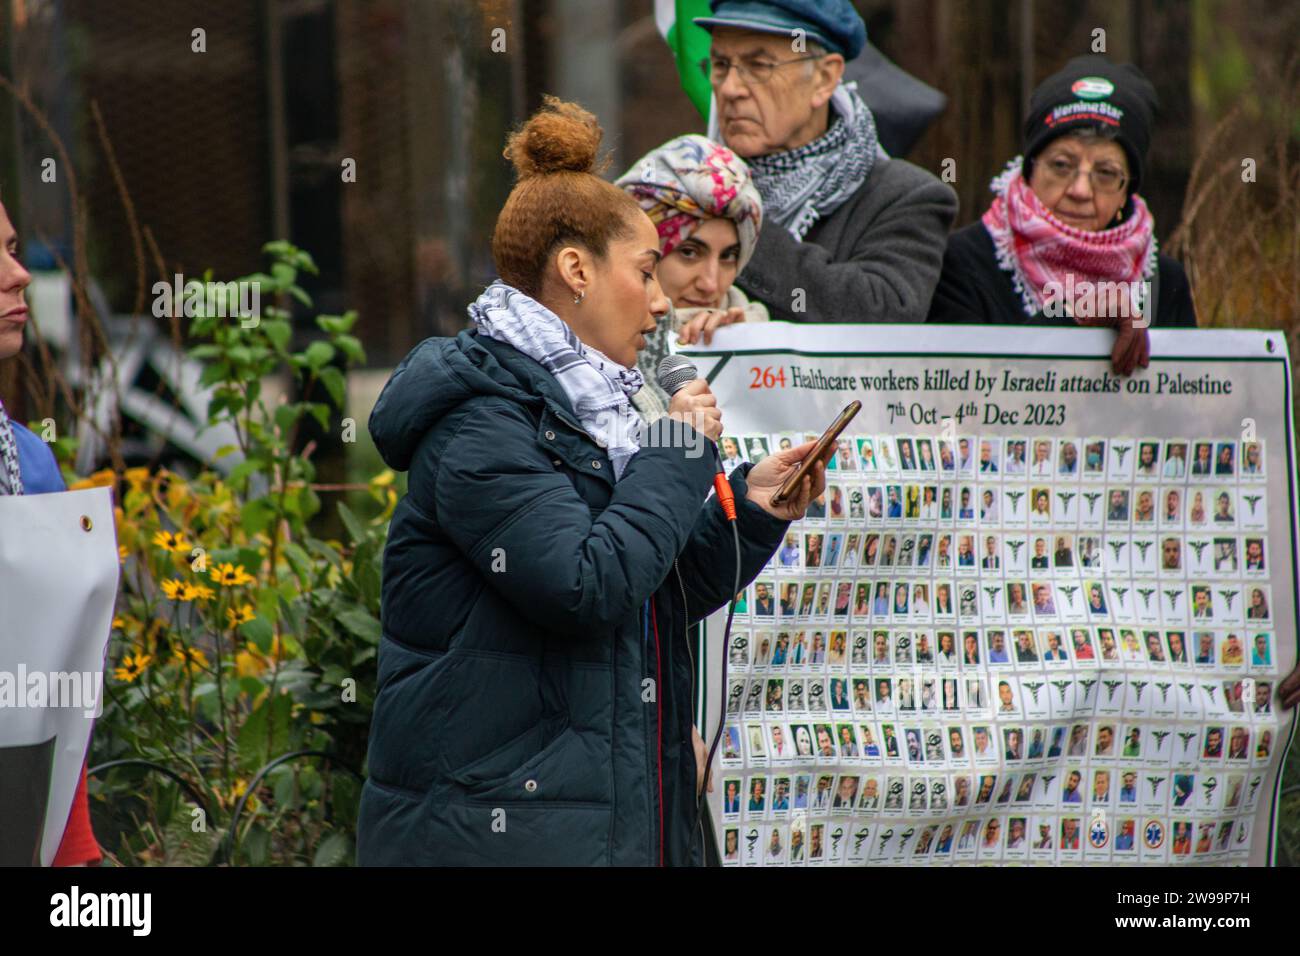 Londra, Regno Unito - 24 dicembre 2023: Gli operatori sanitari per la Palestina organizzano una veglia multi-religiosa la vigilia di Natale. Foto Stock